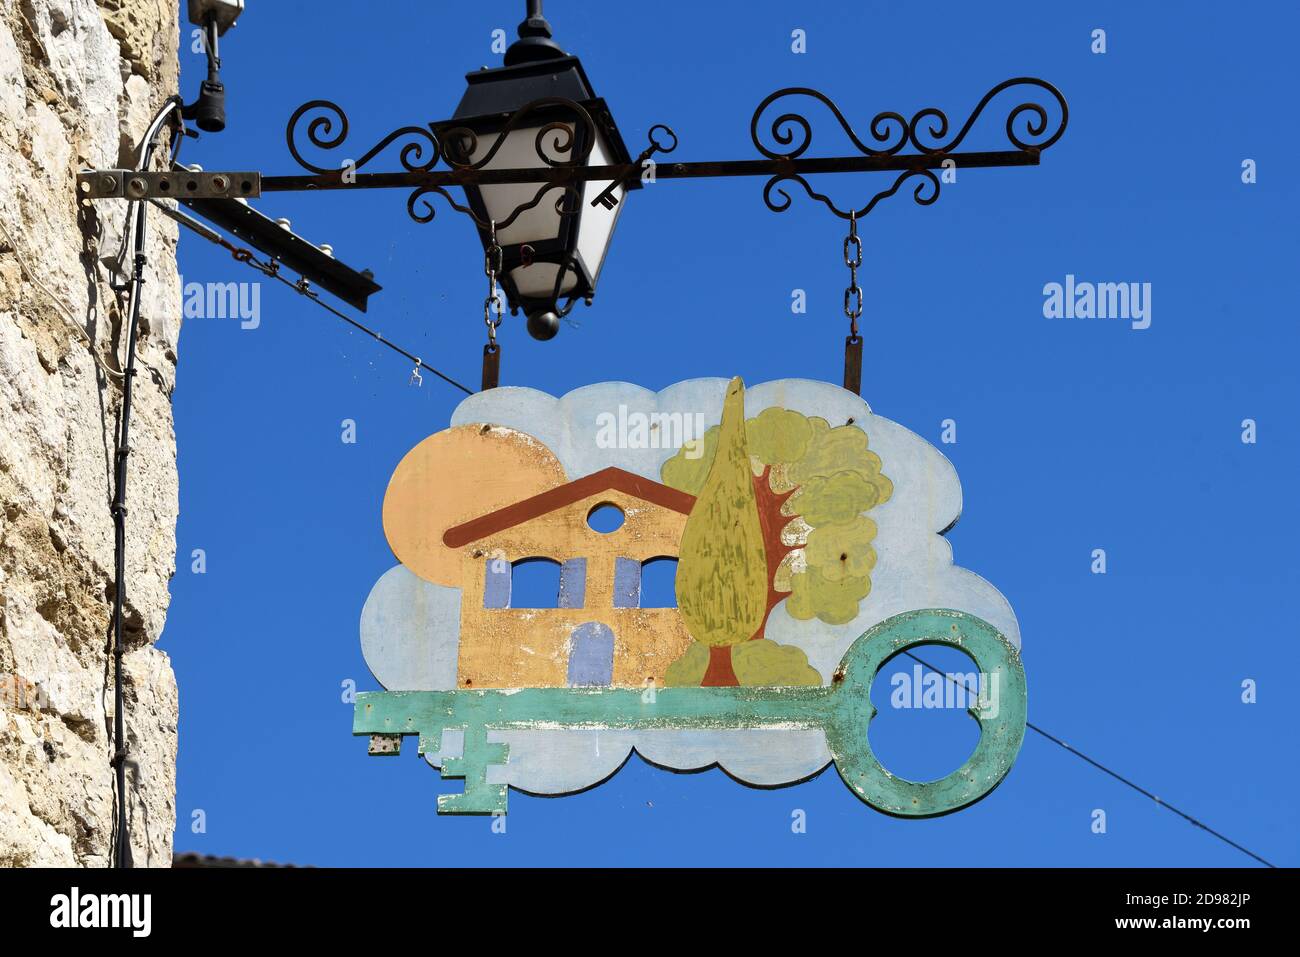 Hängendes Zeichen Werbung Immobilienagentur oder Immobilienmakler Zeichen Frankreich. Rustikales Haus & Schlüssel Stockfoto